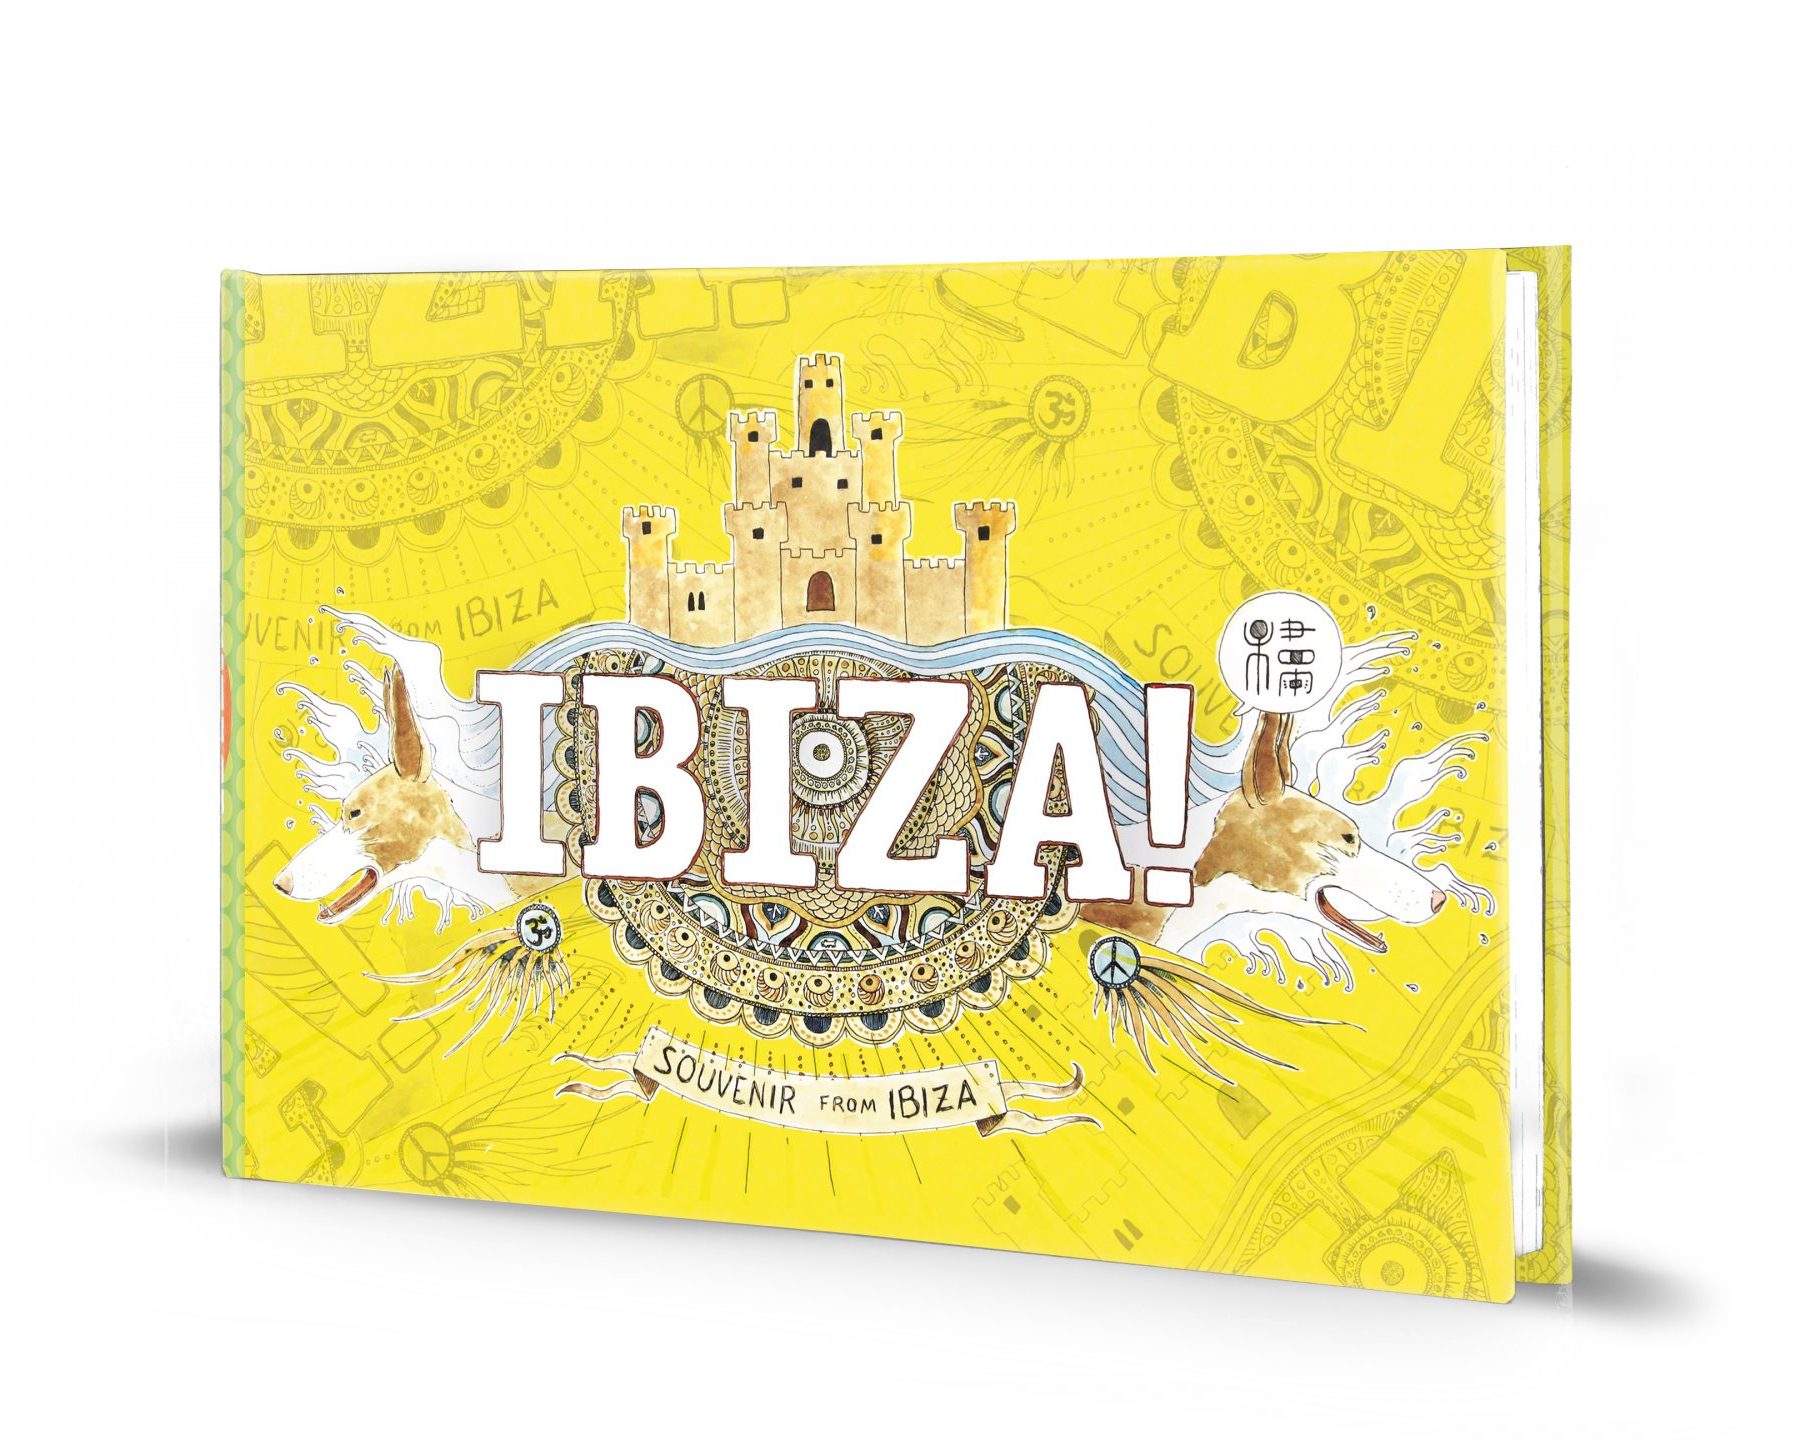 Portada cómic ilustrado de Ibiza con paisajes en acuarela y dibujos de la isla (estilo Urban sketchers España). Souvenirs de viaje